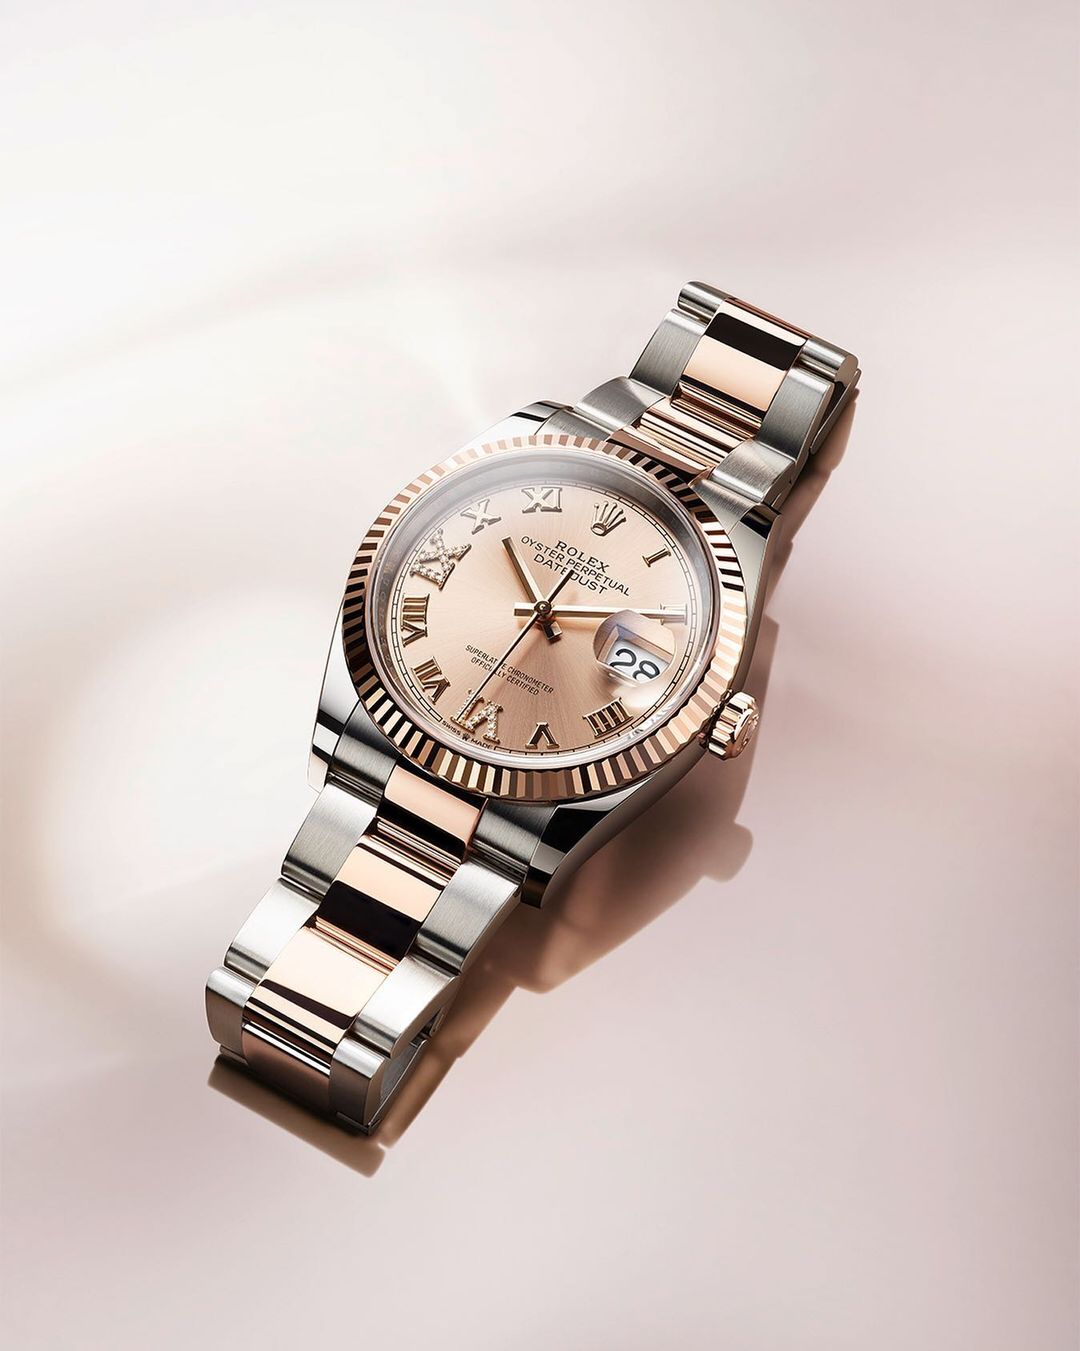 Rolex объявил, что не поспевает за спросом на свои часы